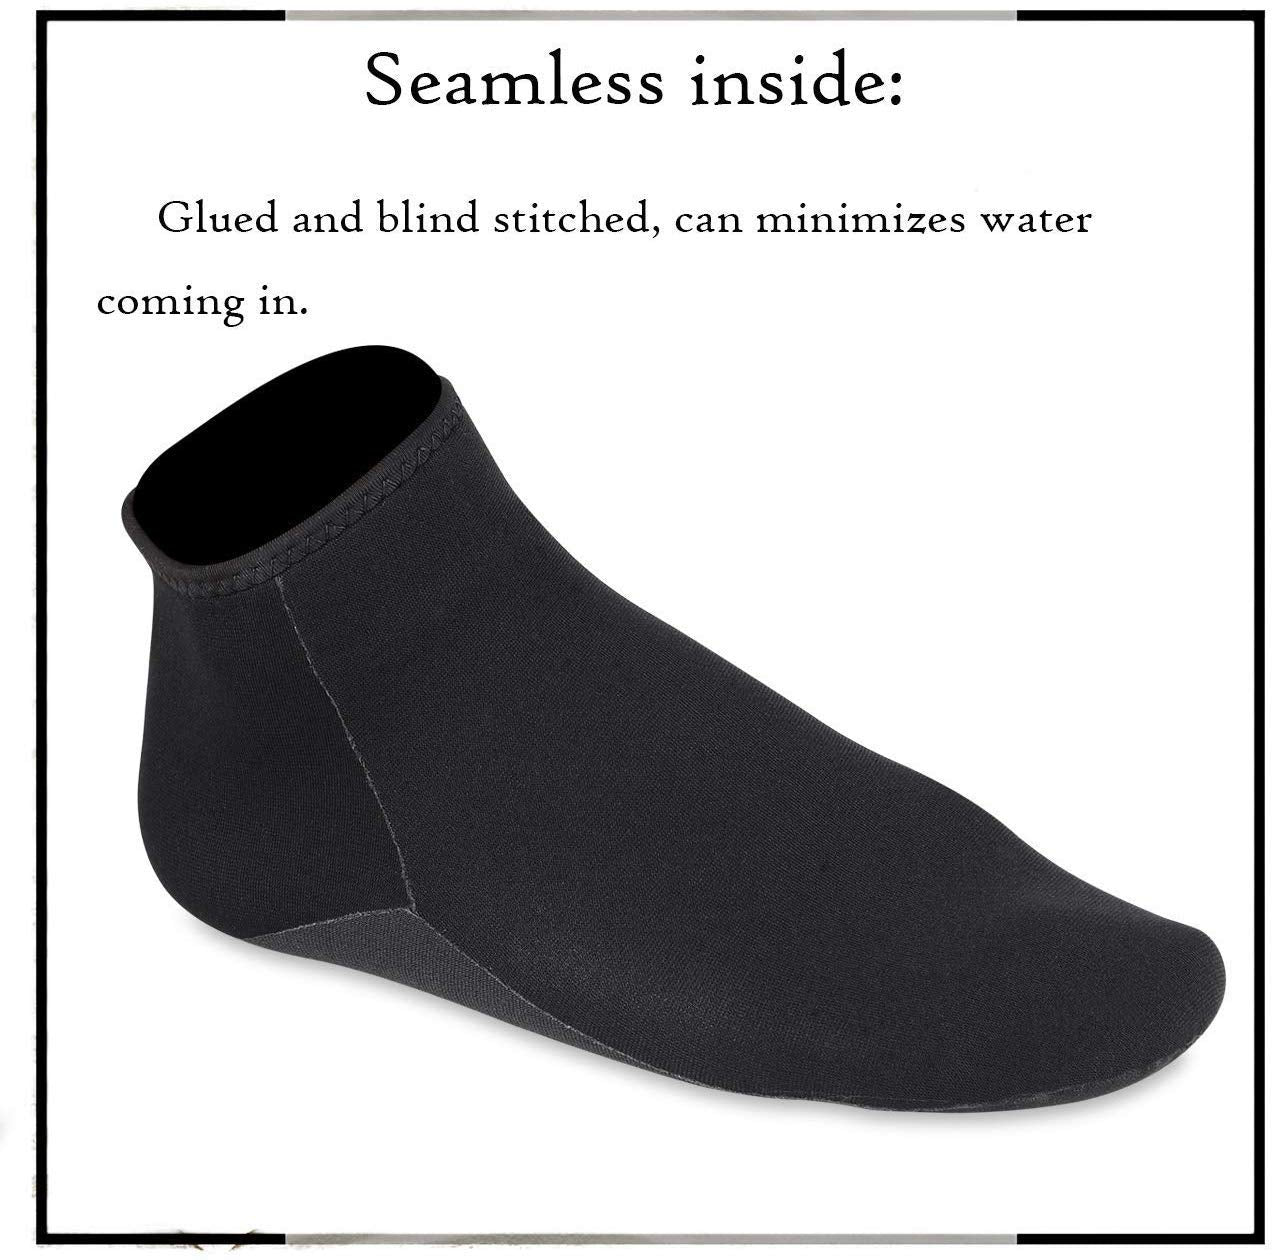 OMGear Water Socks Neoprene Socks Beach Booties 3mm 5mm Anti-Slip Wetsuit Footwear Fin Swim Sand Proof Socks